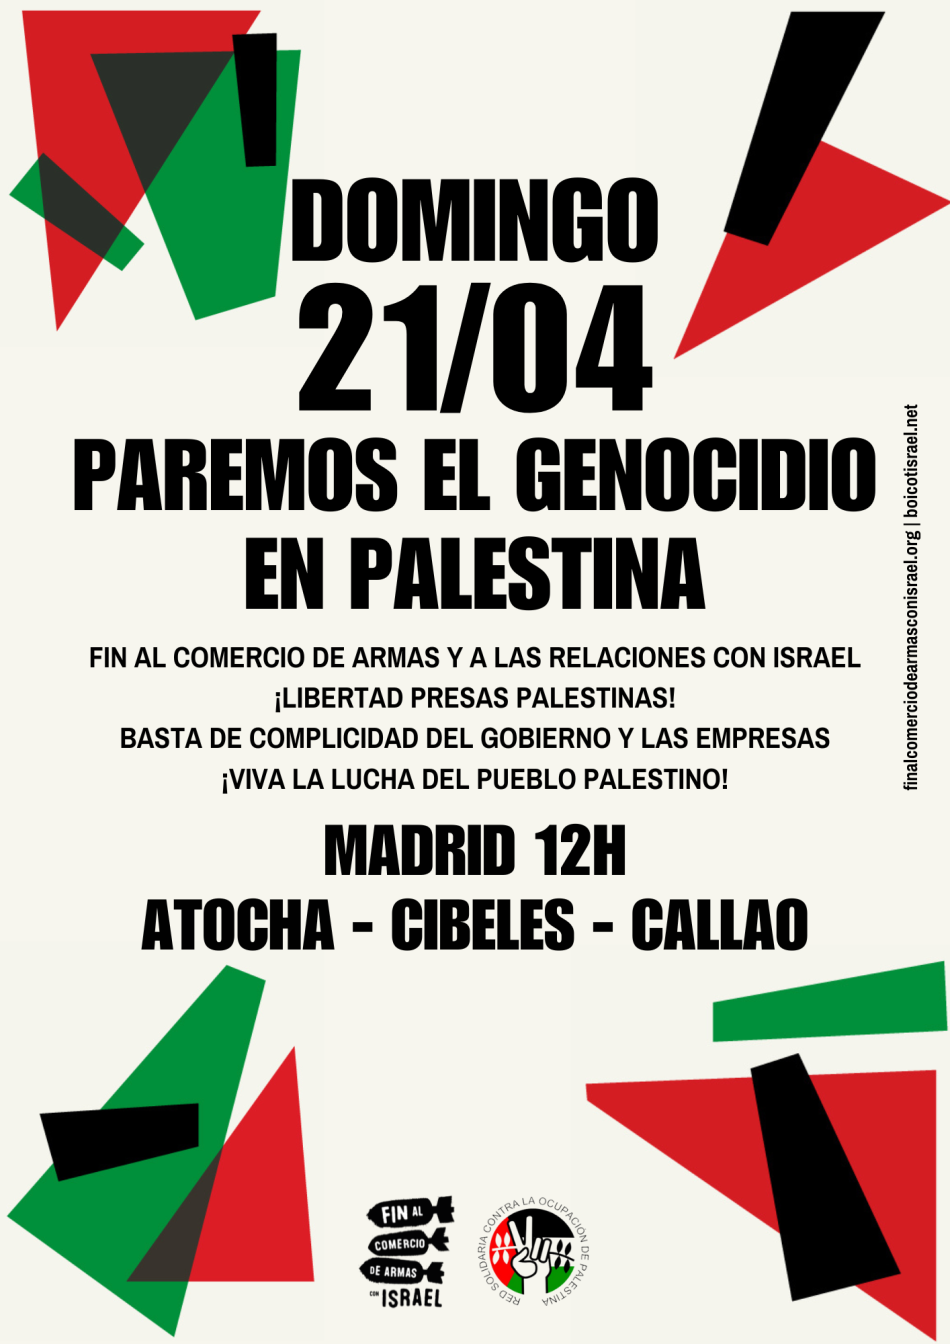 Convocan al cuarto día de movilización estatal por Palestina: domingo, 21 de abril